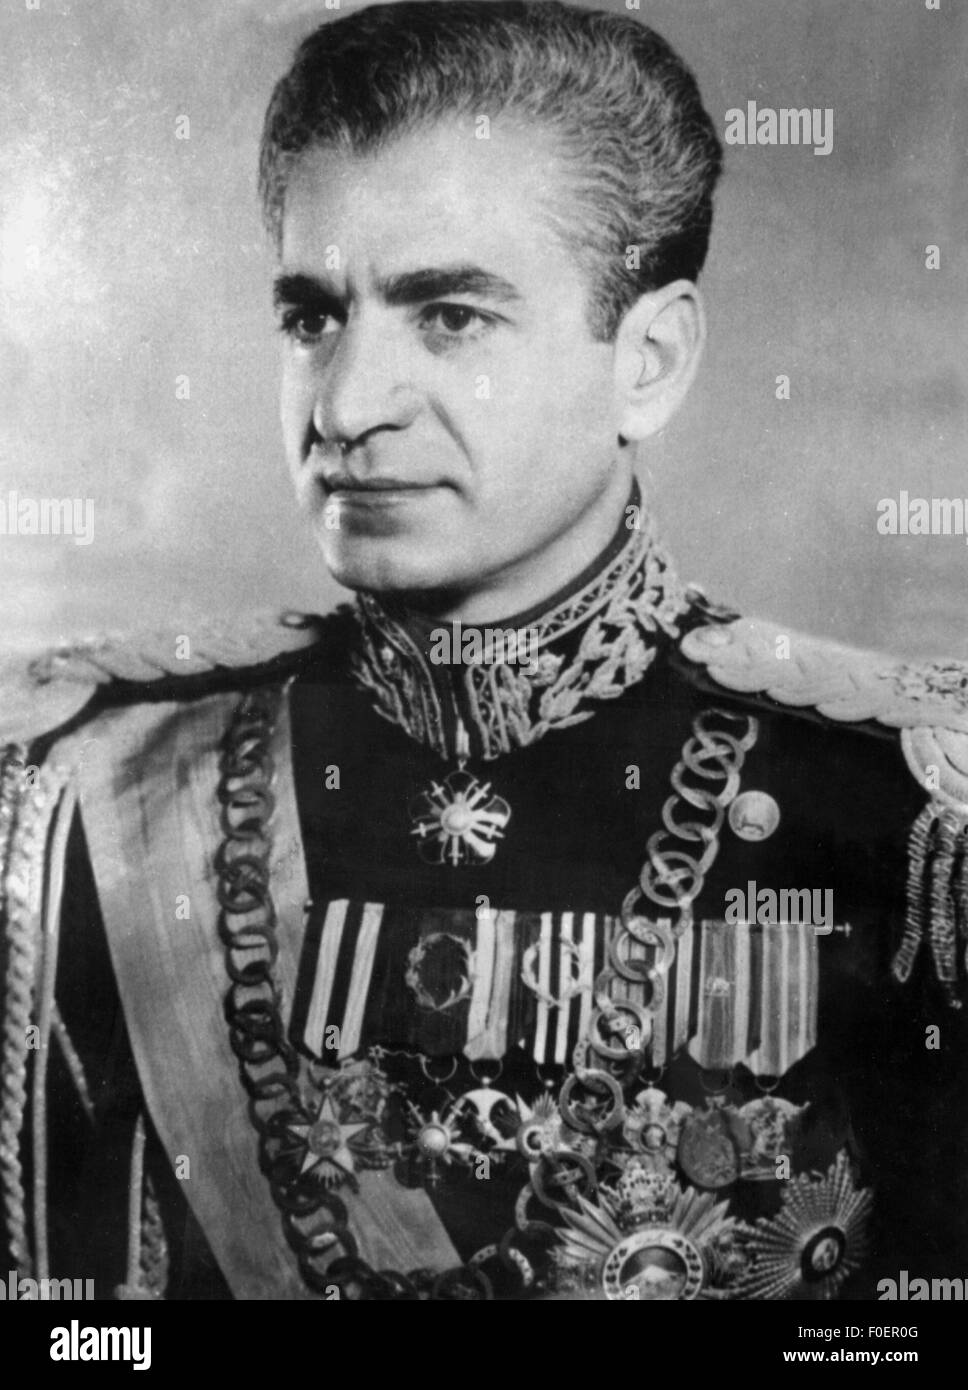 Mohammad Reza Pahlavi Young